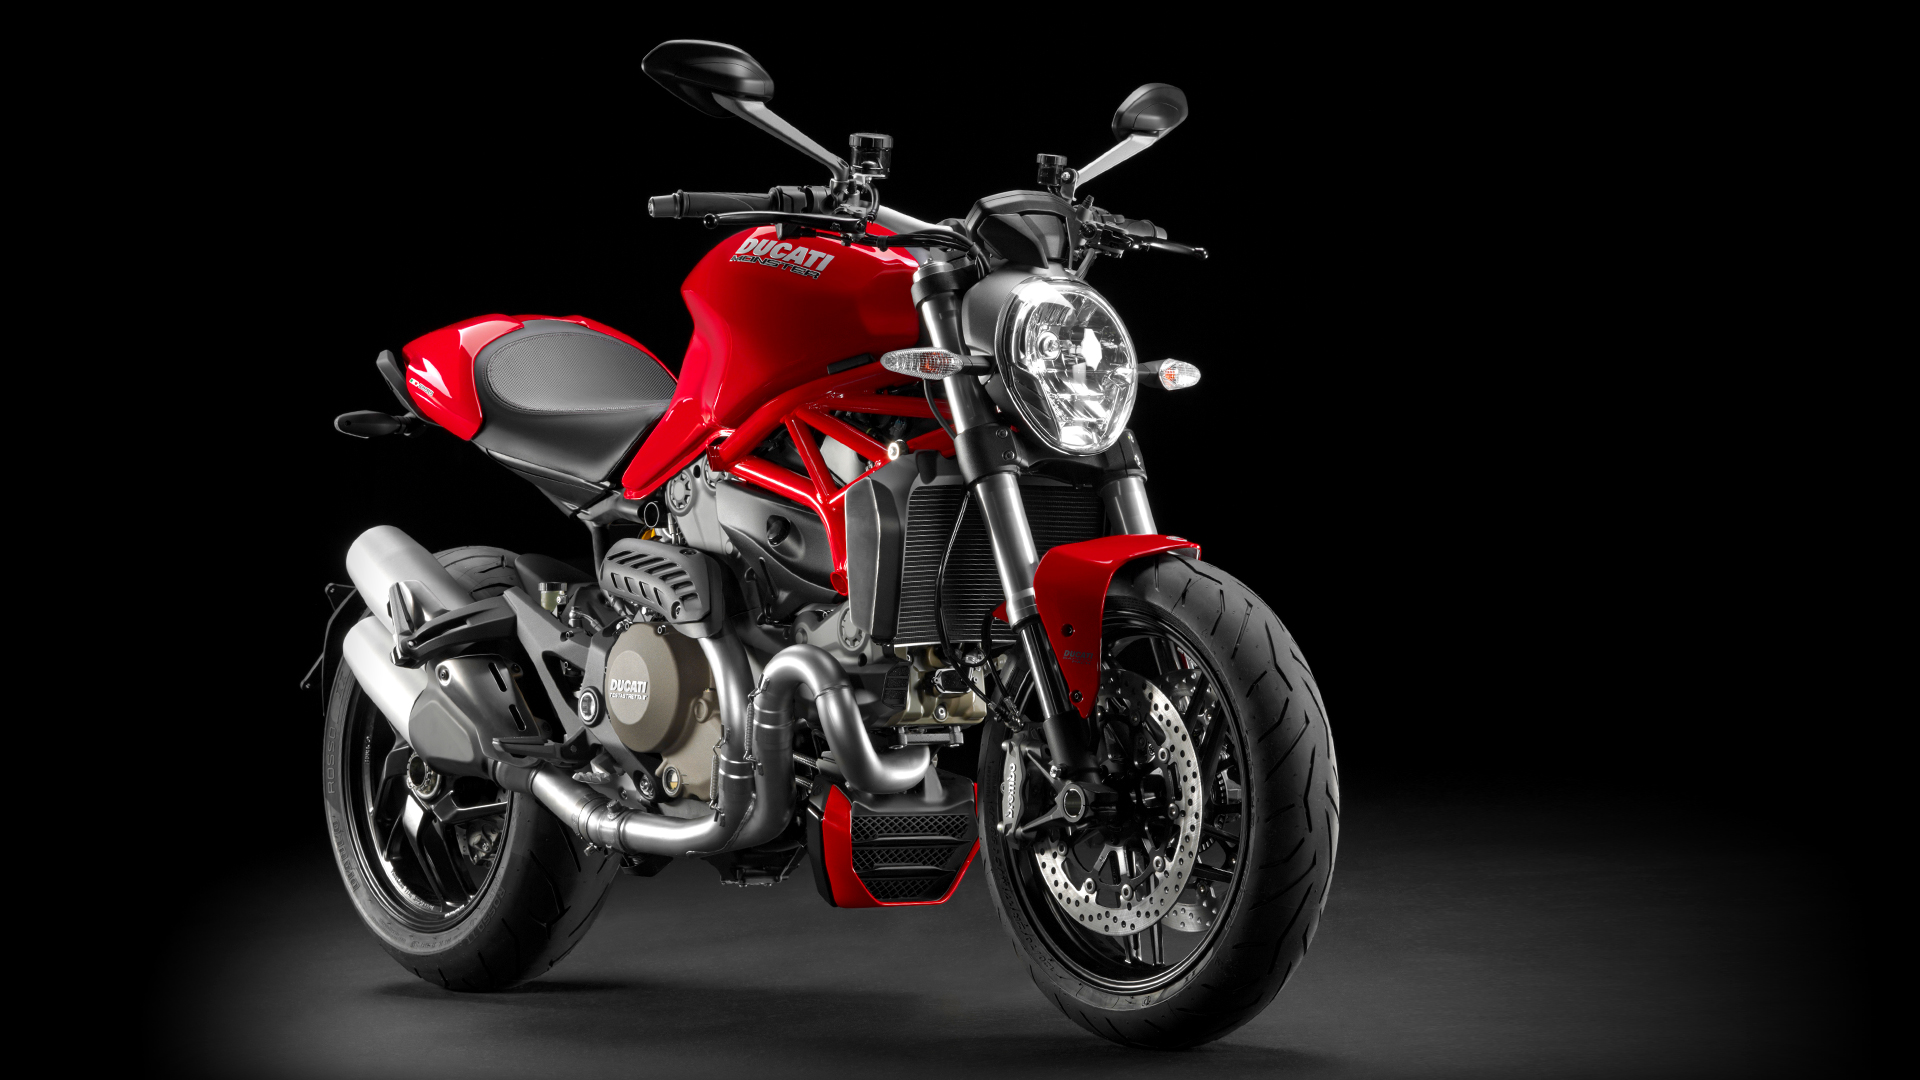 Ducati, Ducati Monster 1200 2014 tampak depan: Ducati Monster 1200 Resmi Diperkenalkan [with High Quality Photos]